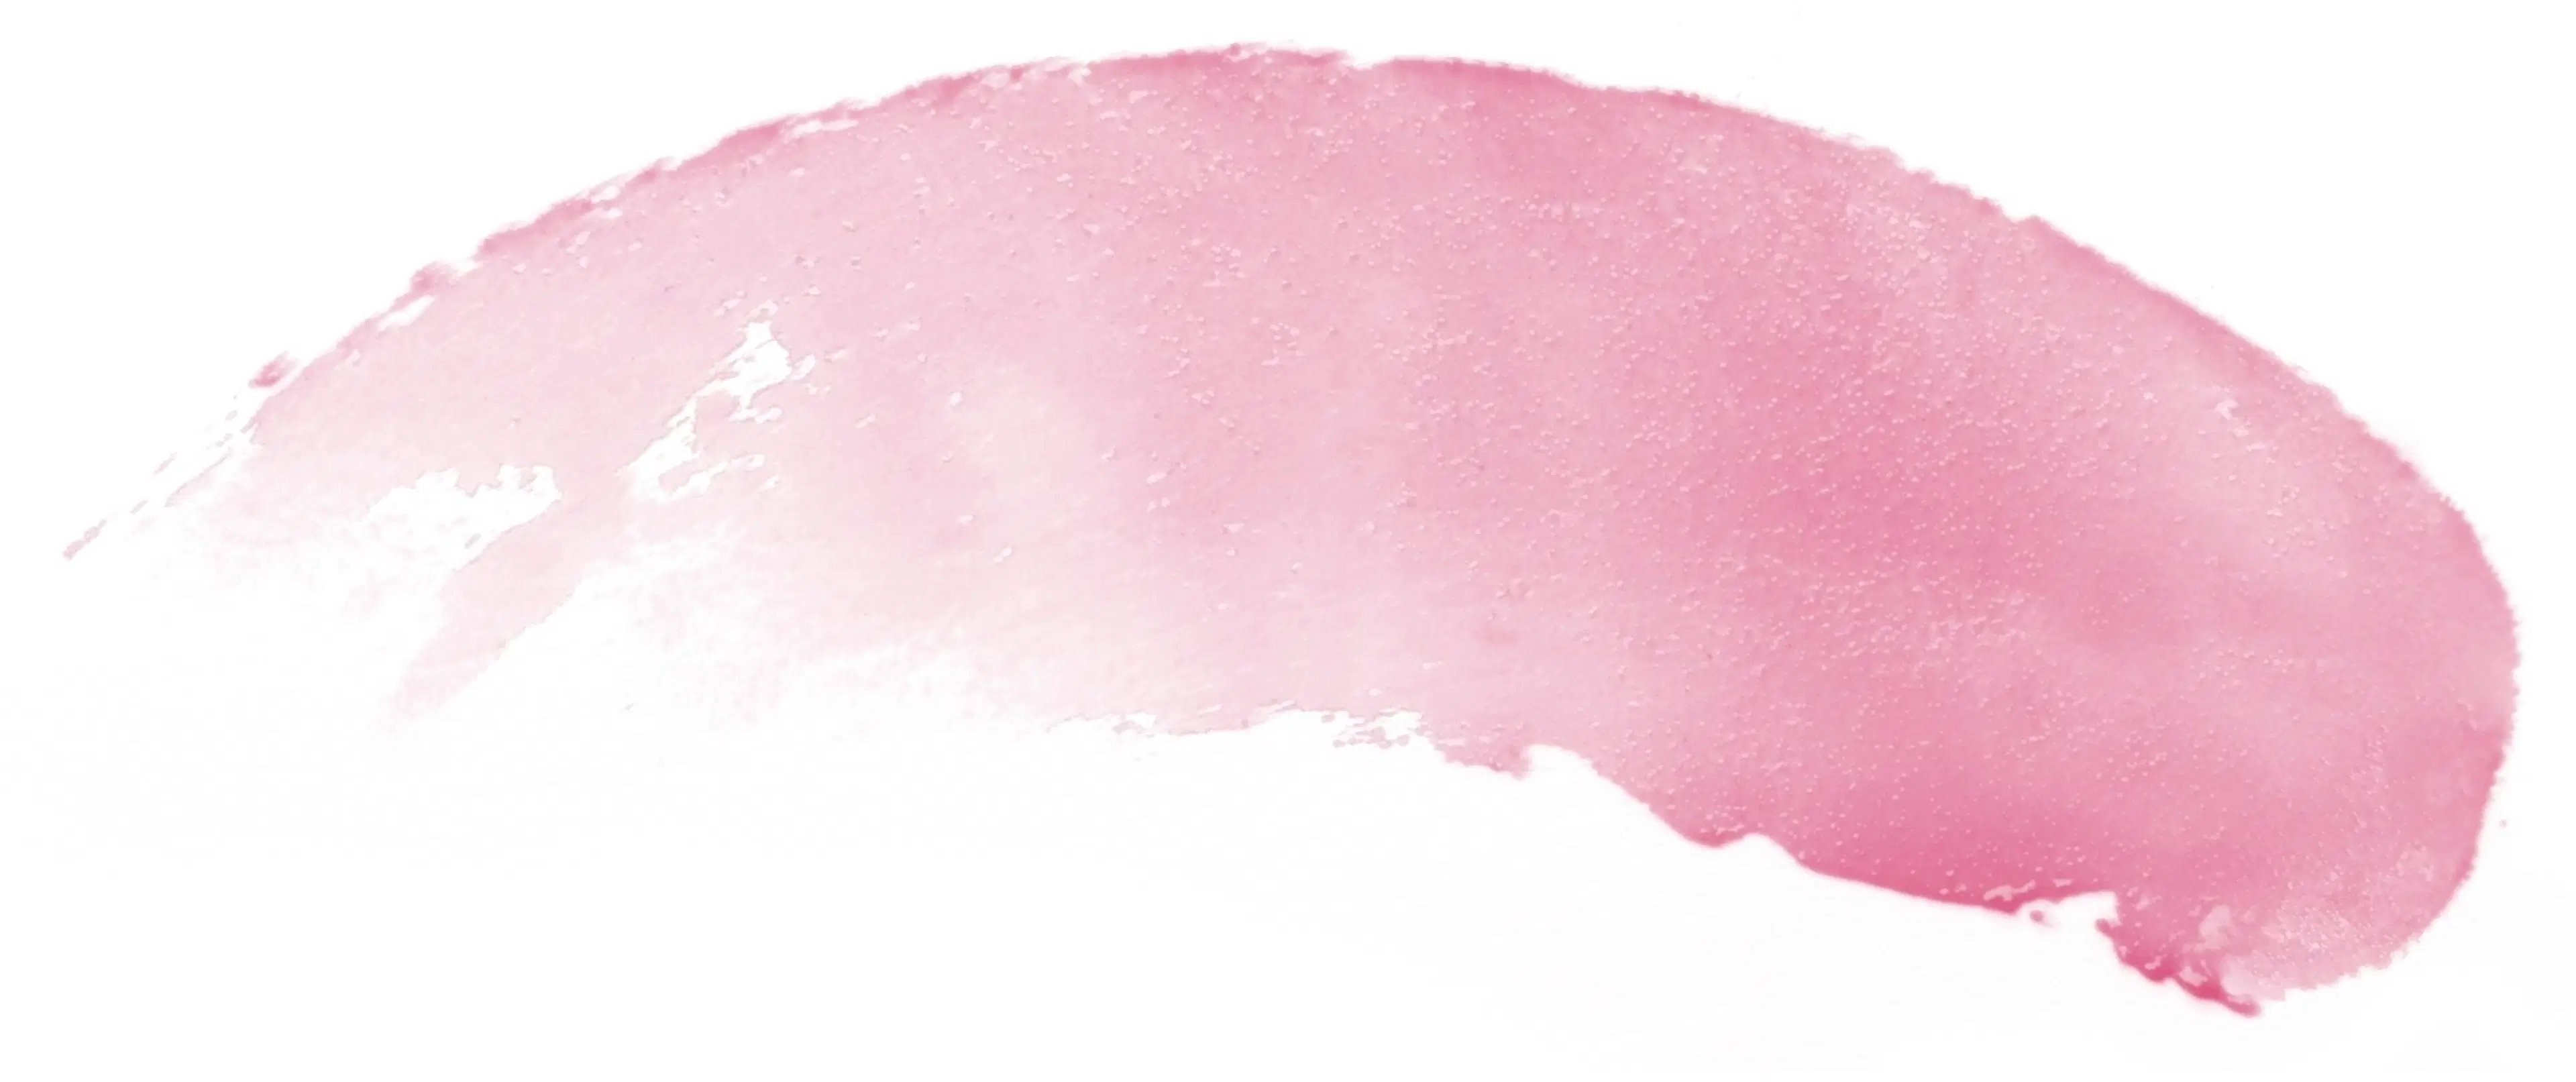 Burt's Bees Tinted Lip Balm Pink Blossom värillinen huulirasva 4,25 g